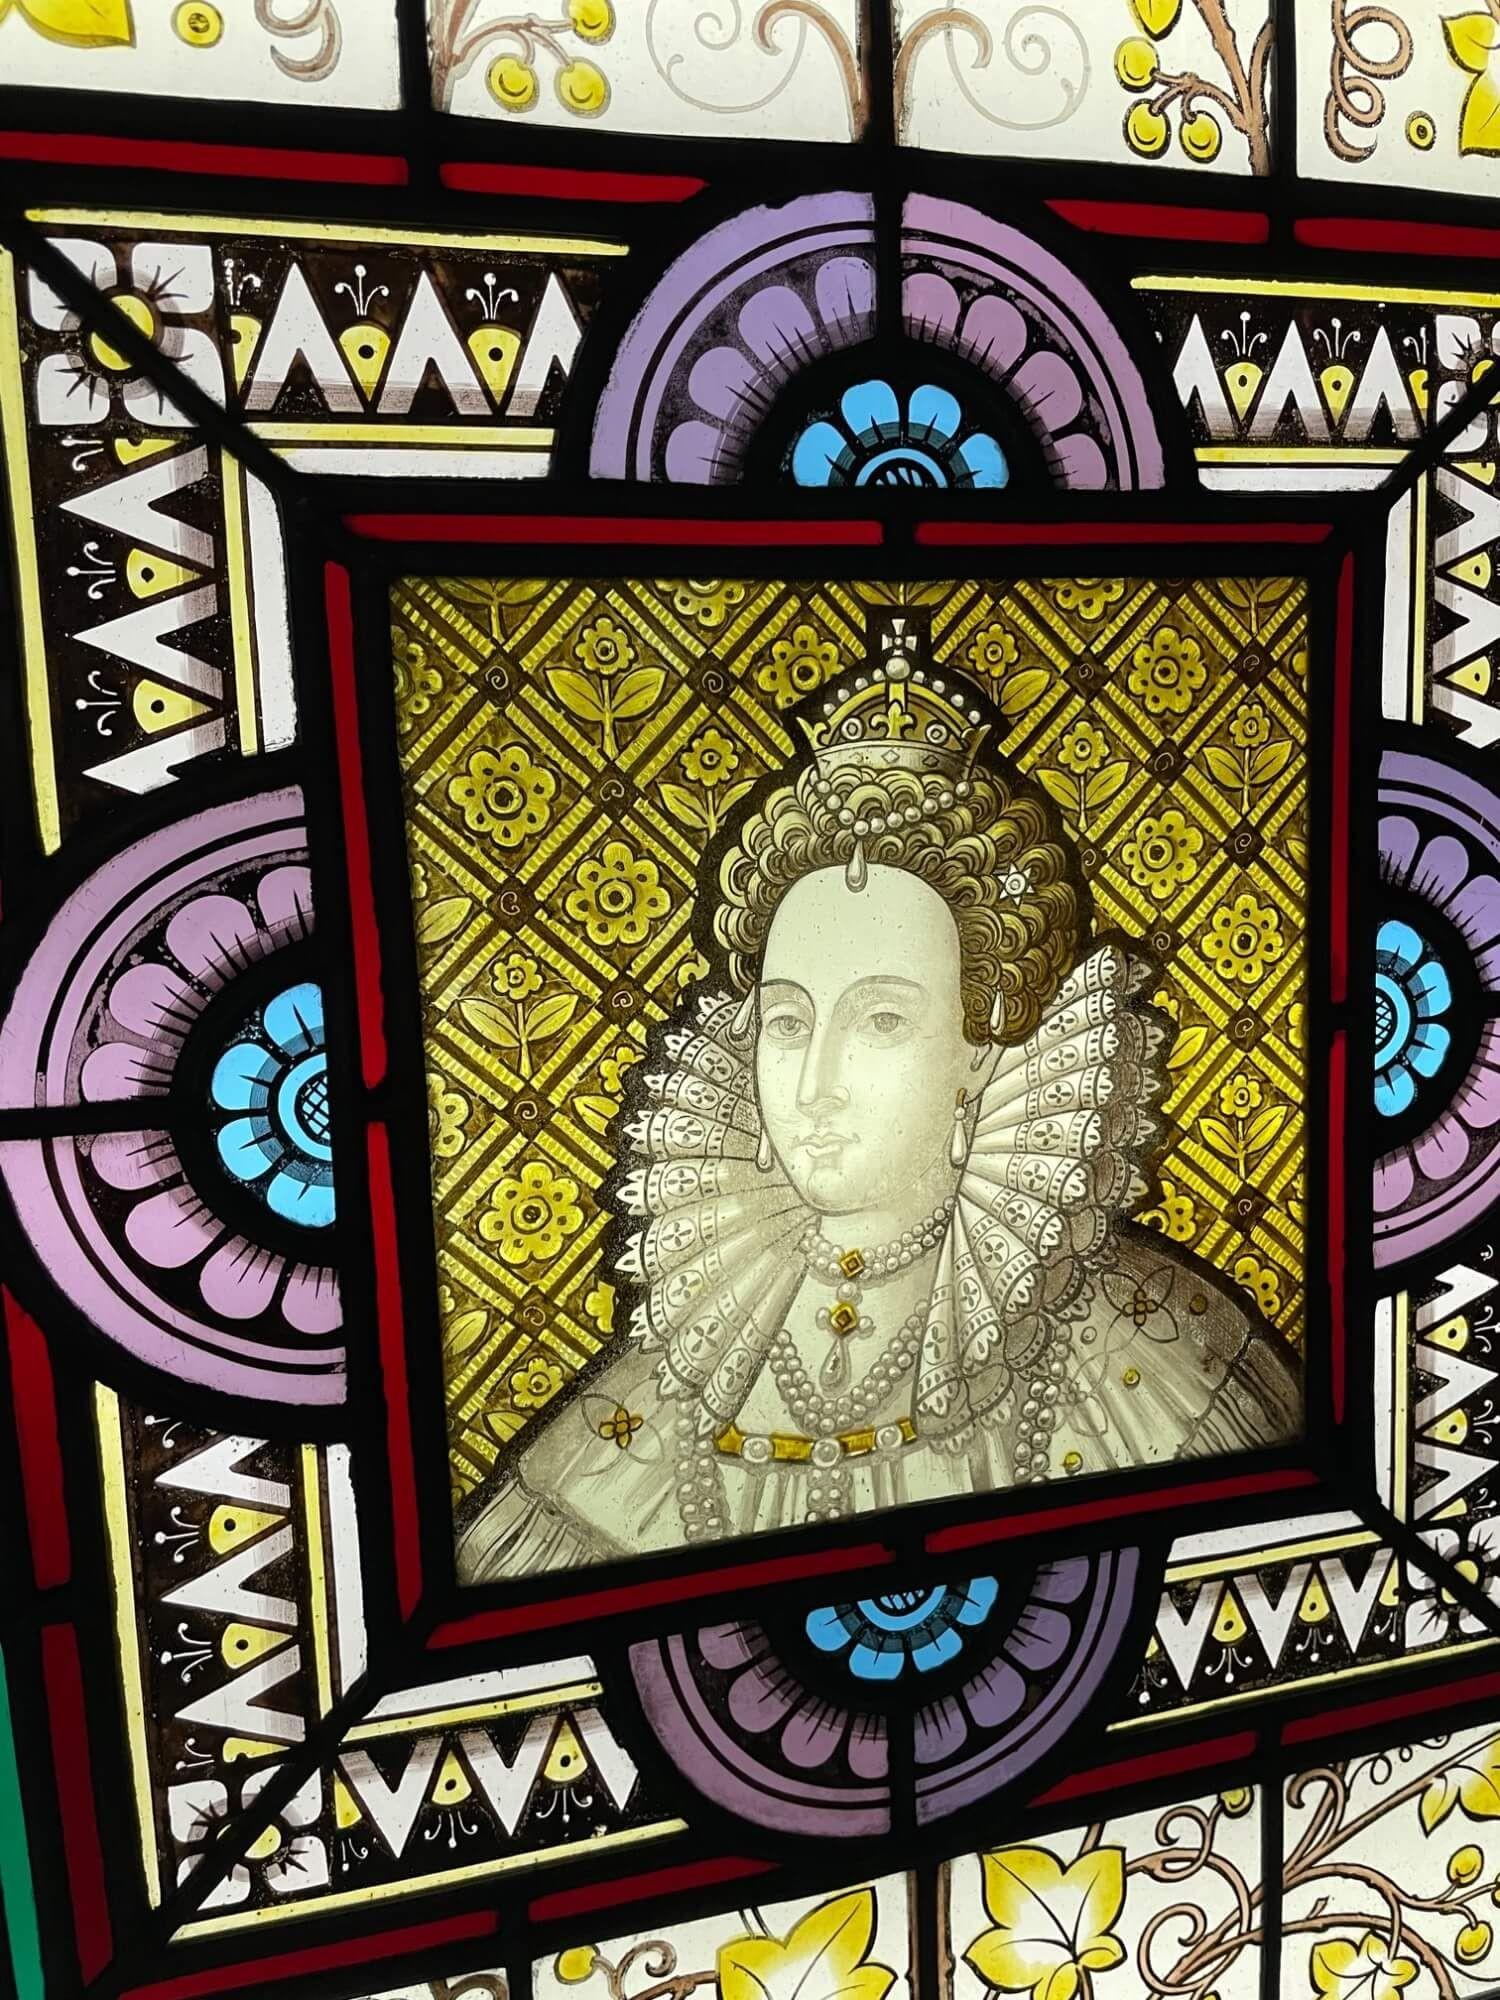 Ein antikes Glasfenster aus dem späten 19. Jahrhundert, das Königin Elisabeth I. darstellt, eines von 3 ähnlichen, die wir verkaufen und die bemerkenswerte Persönlichkeiten der britischen Geschichte zeigen. In der Mitte befindet sich eine markante